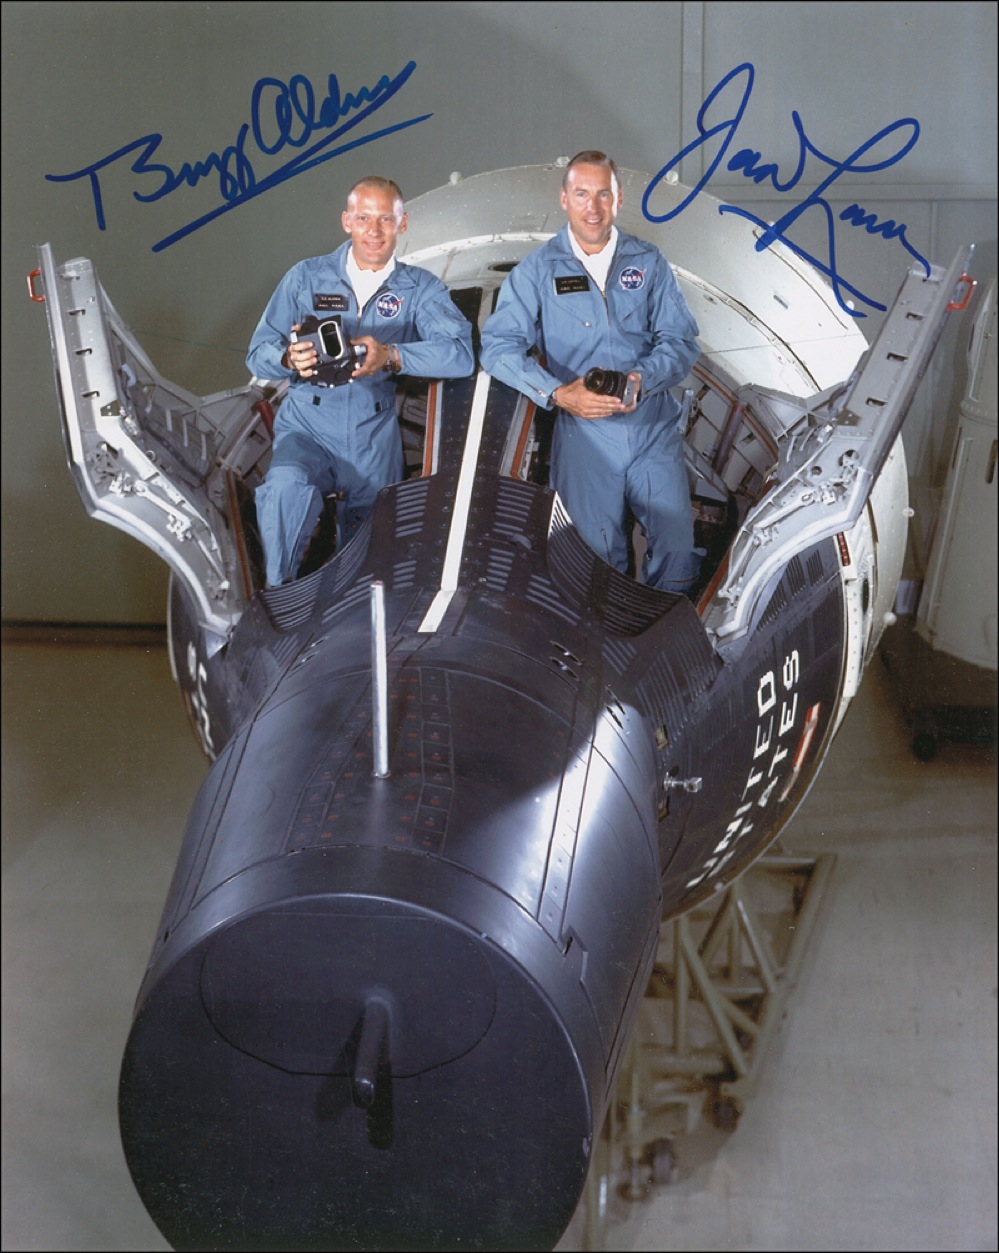 Lot #401 Gemini 12